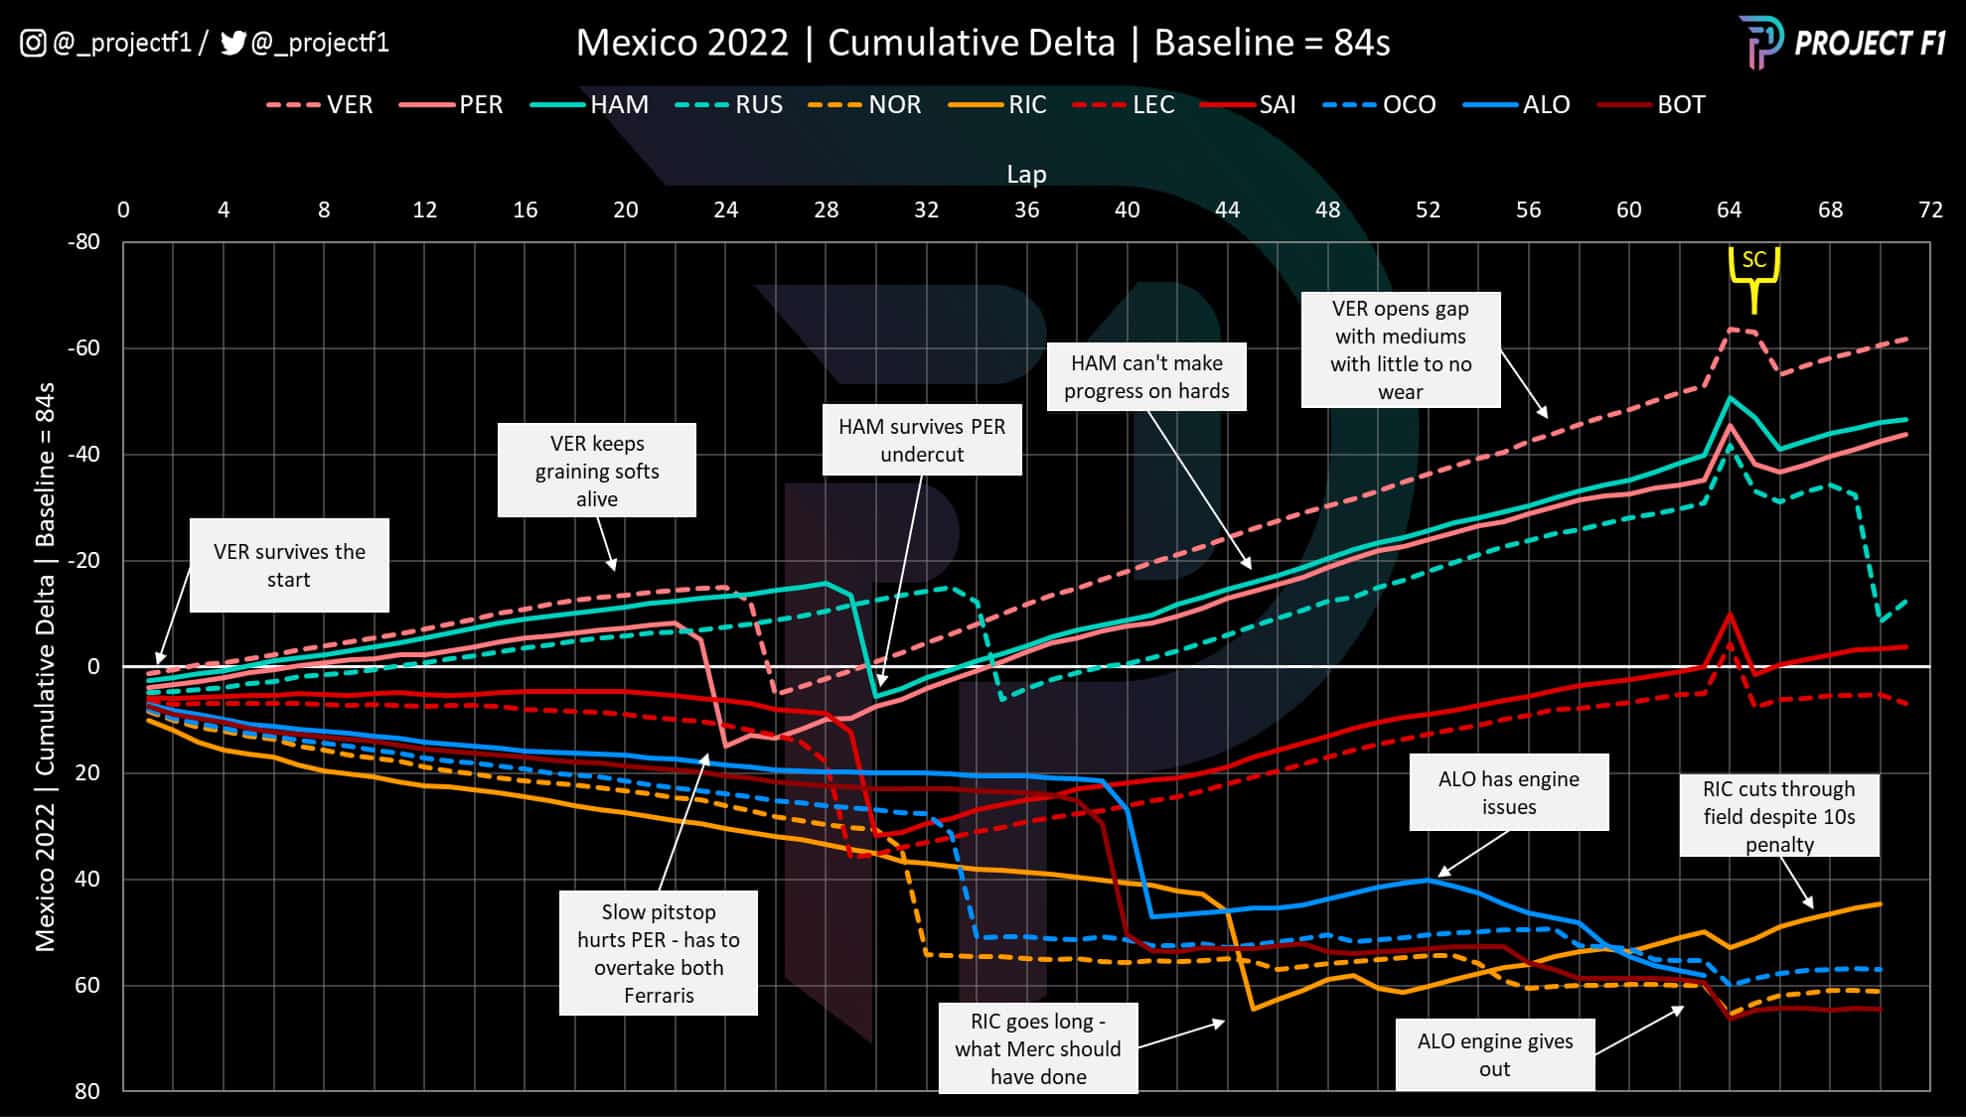 2022 Mexican GP cumulative delta graph